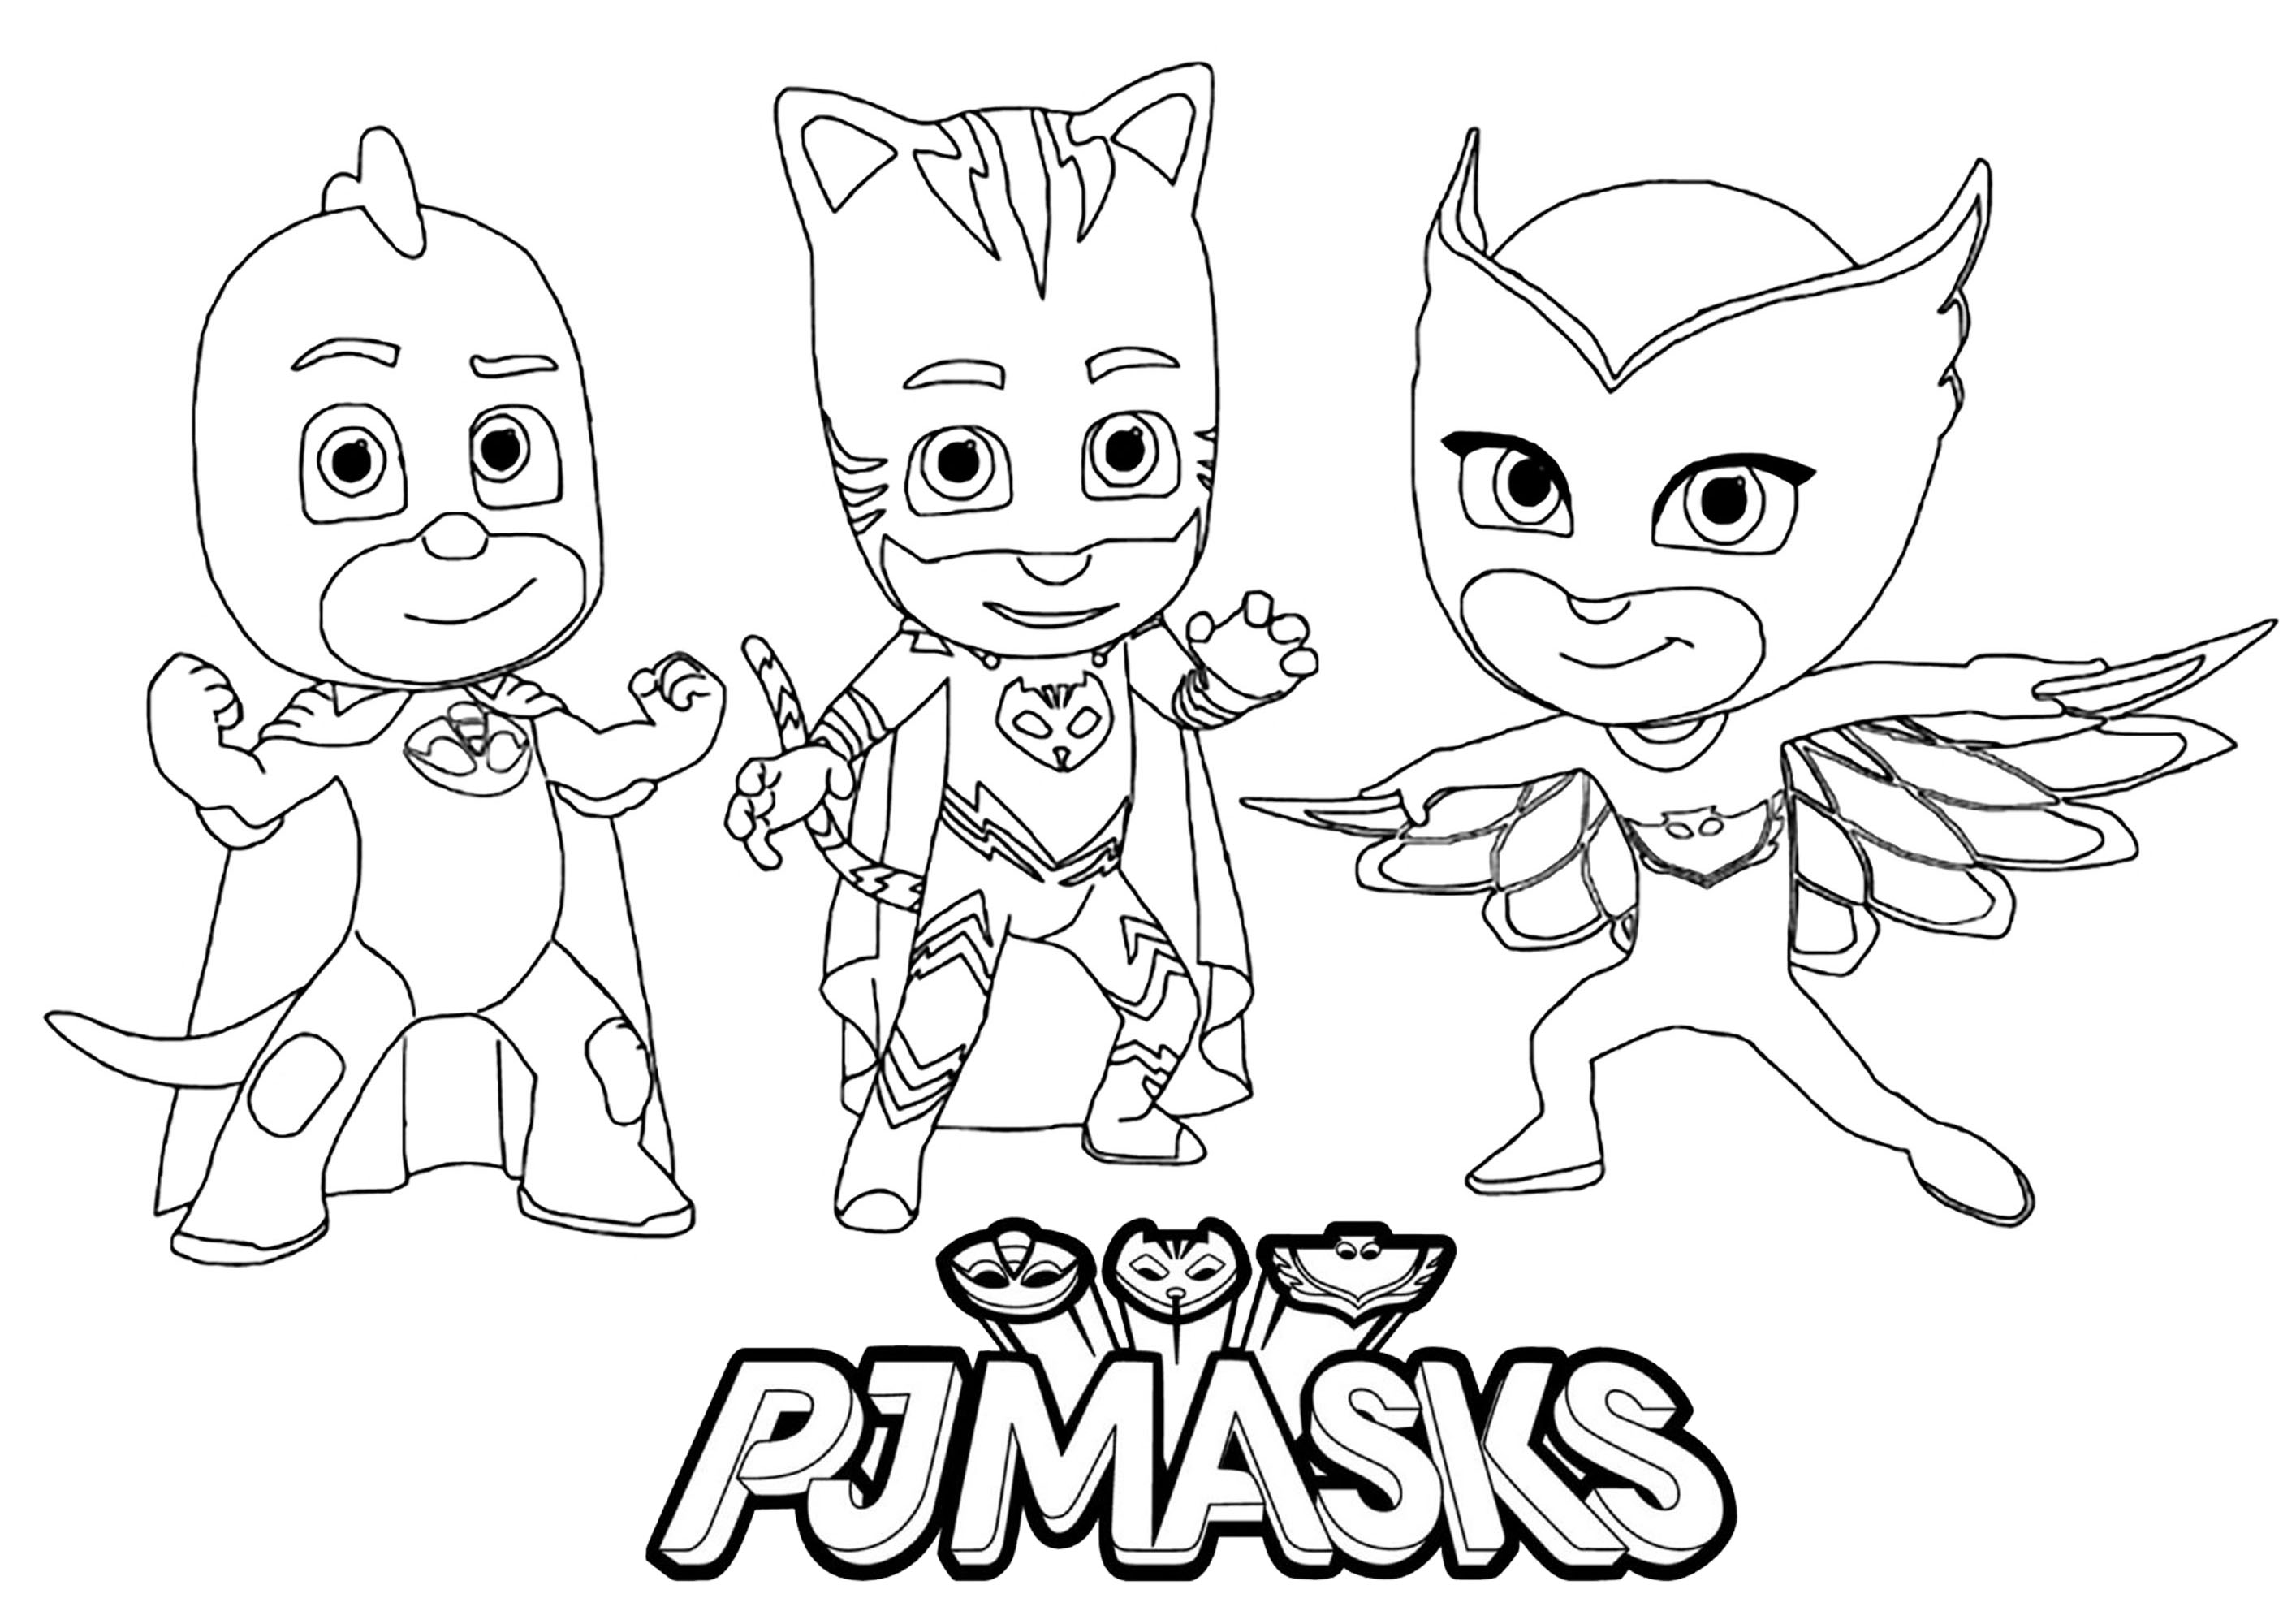 PJ Masks con el logotipo de la serie